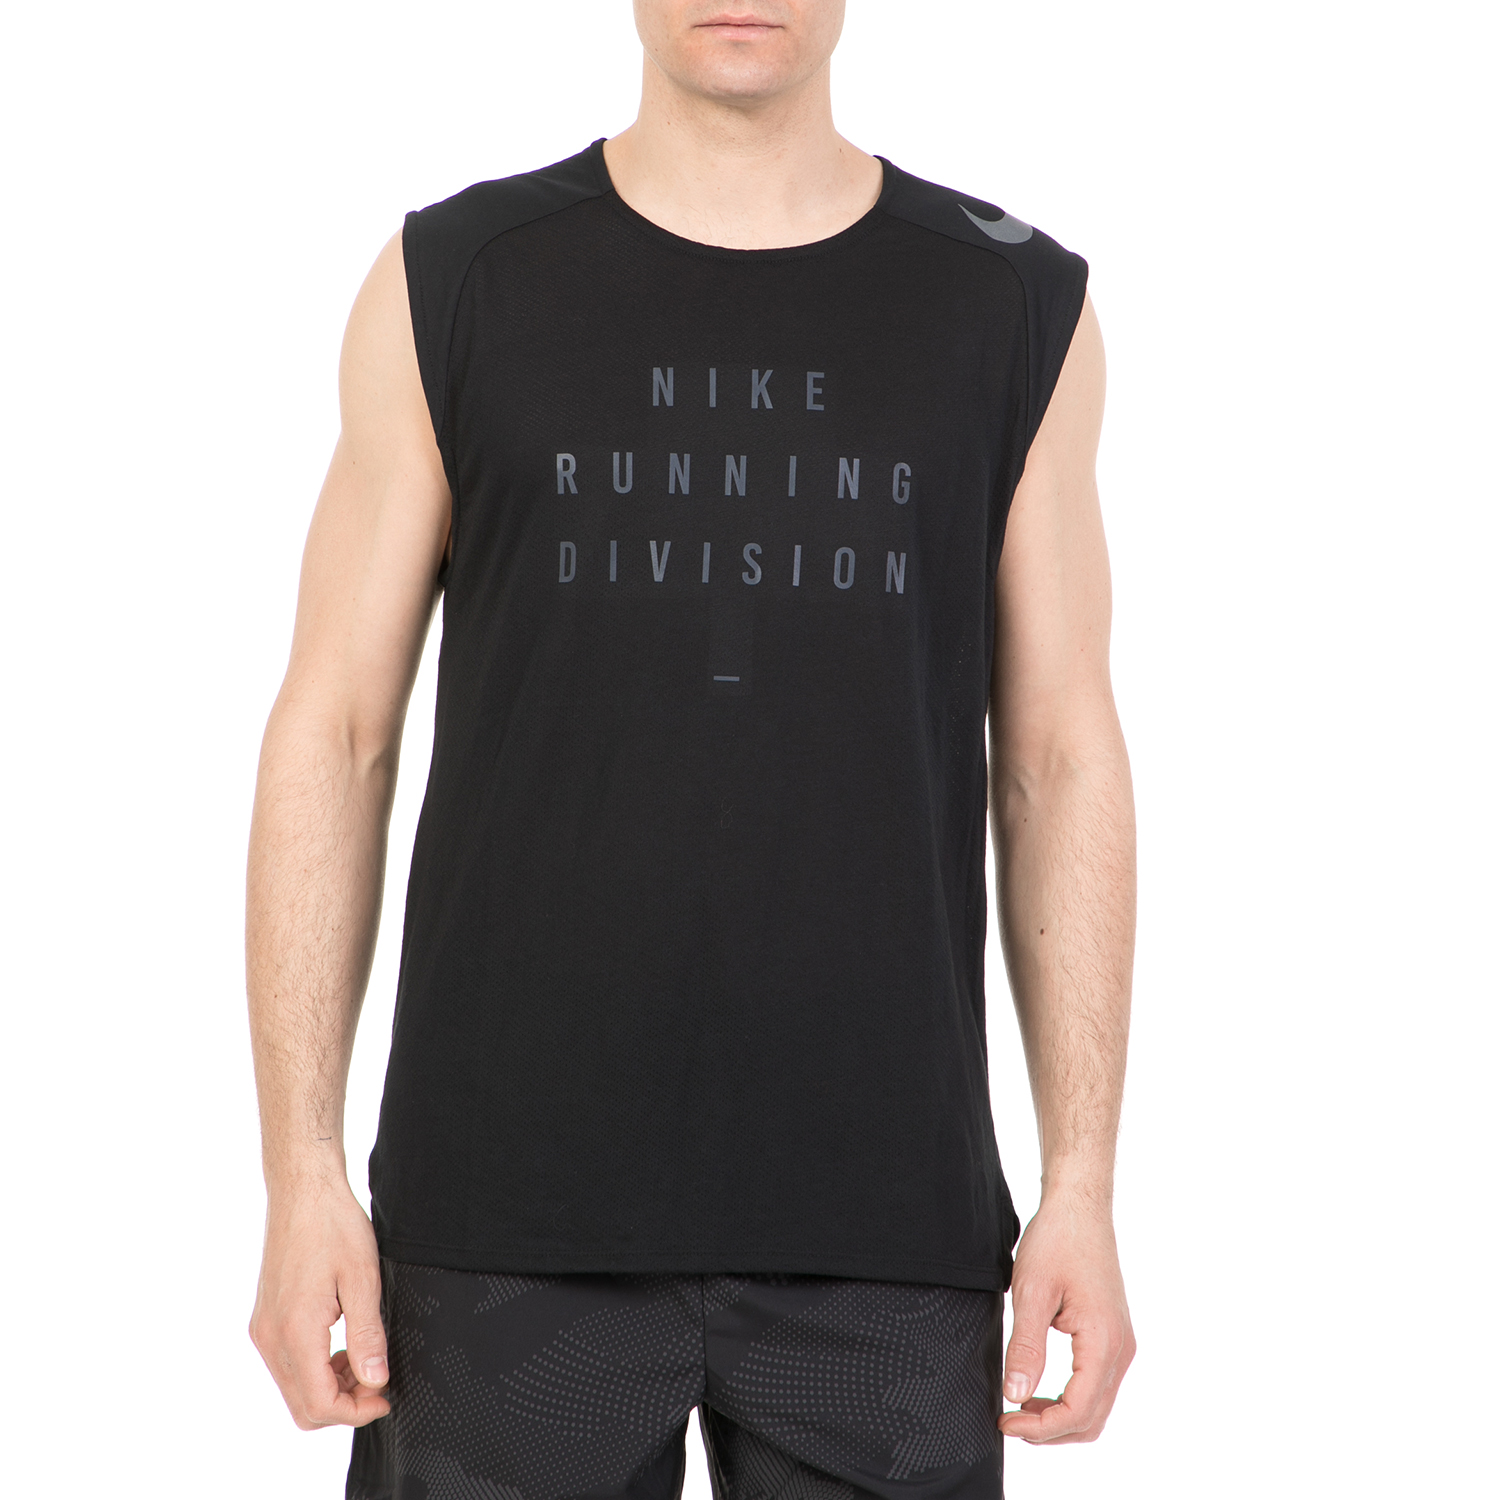 Ανδρικά/Ρούχα/Μπλούζες/Αμάνικες NIKE - Ανδρική αμάνικη μπλούζα NIKE BRTHE TLWND μαύρη